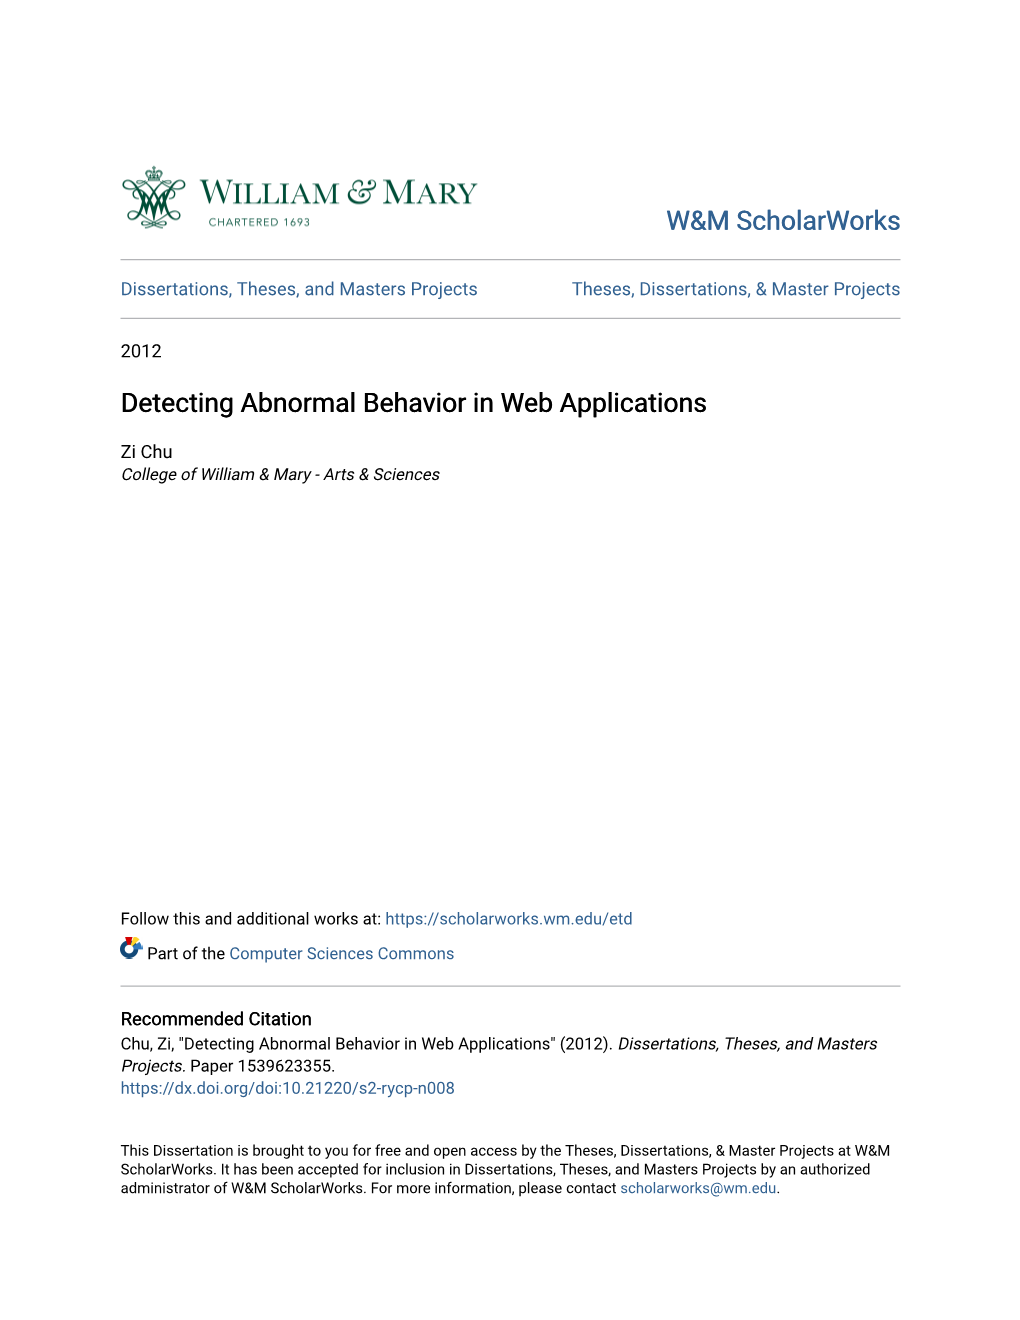 Detecting Abnormal Behavior in Web Applications